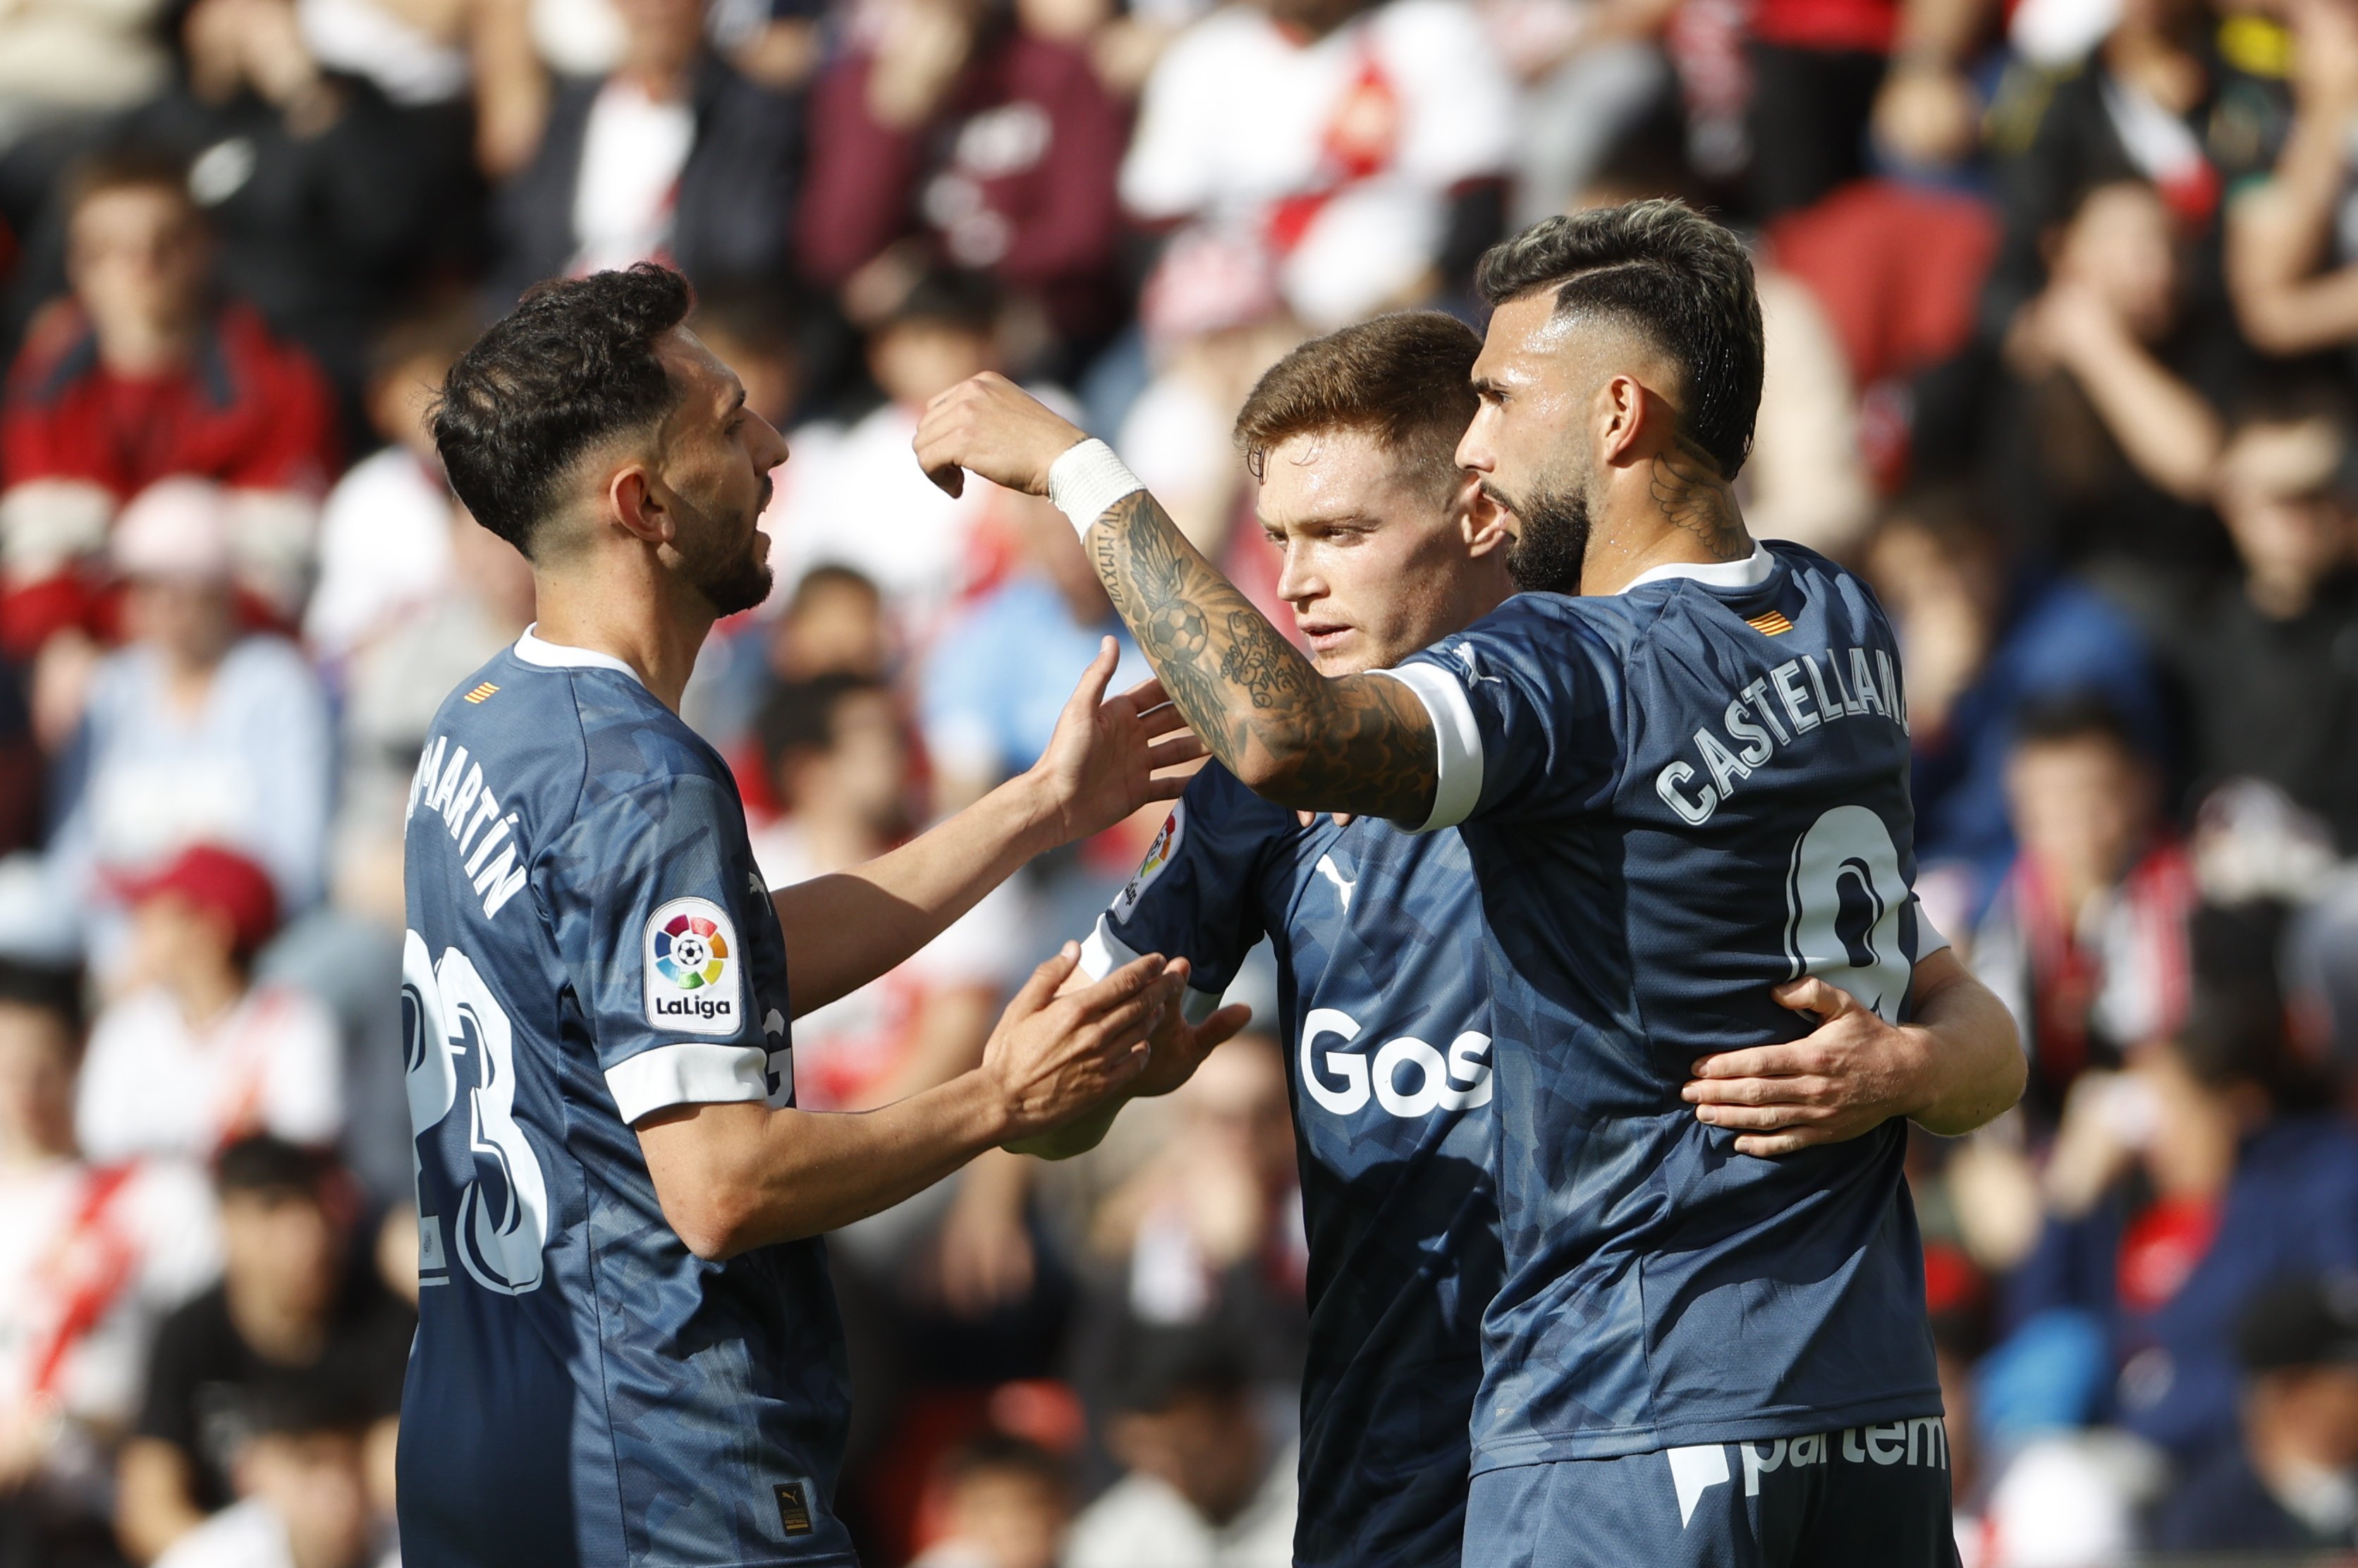 El Girona remunta i suma un punt molt valuós al camp del Rayo Vallecano (2-2)